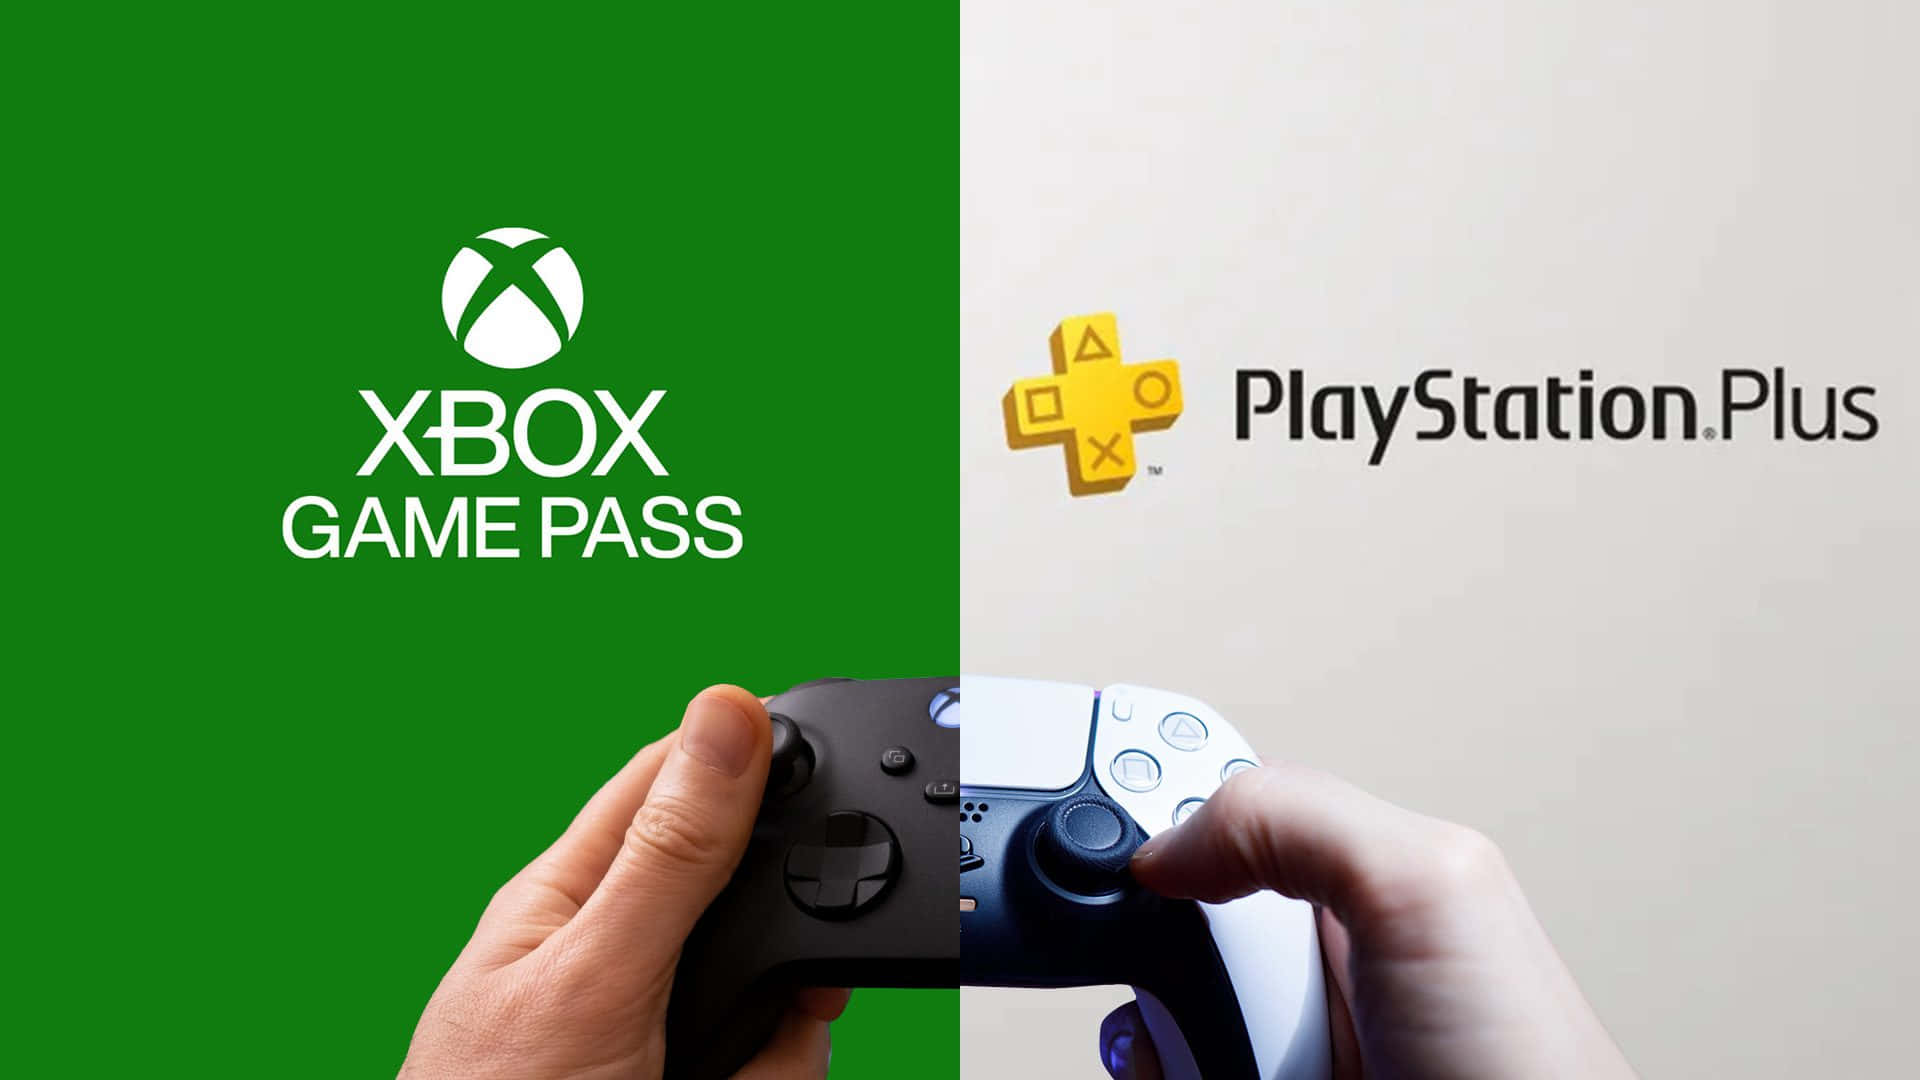 Portala Tua Esperienza Di Gioco Al Livello Successivo Con Xbox Series X.